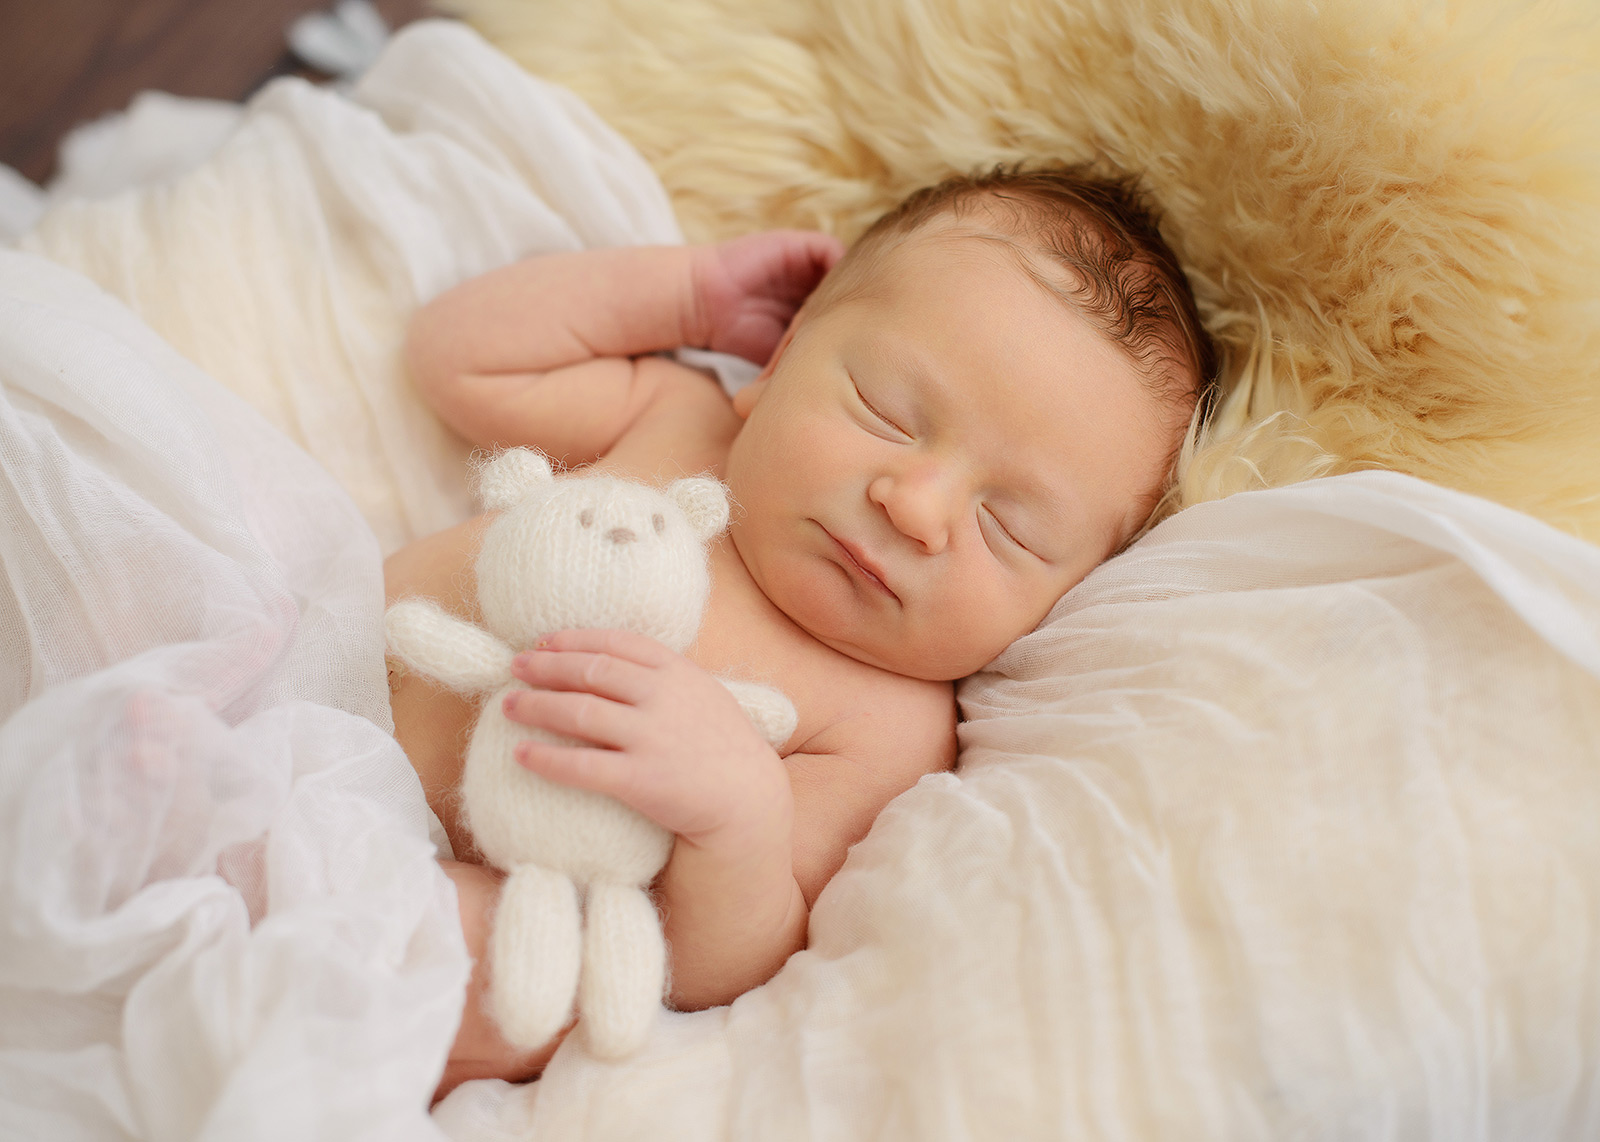 Sleeping newborn baby boy cuddling with stuffed bear toy in our Sacramento studio. 